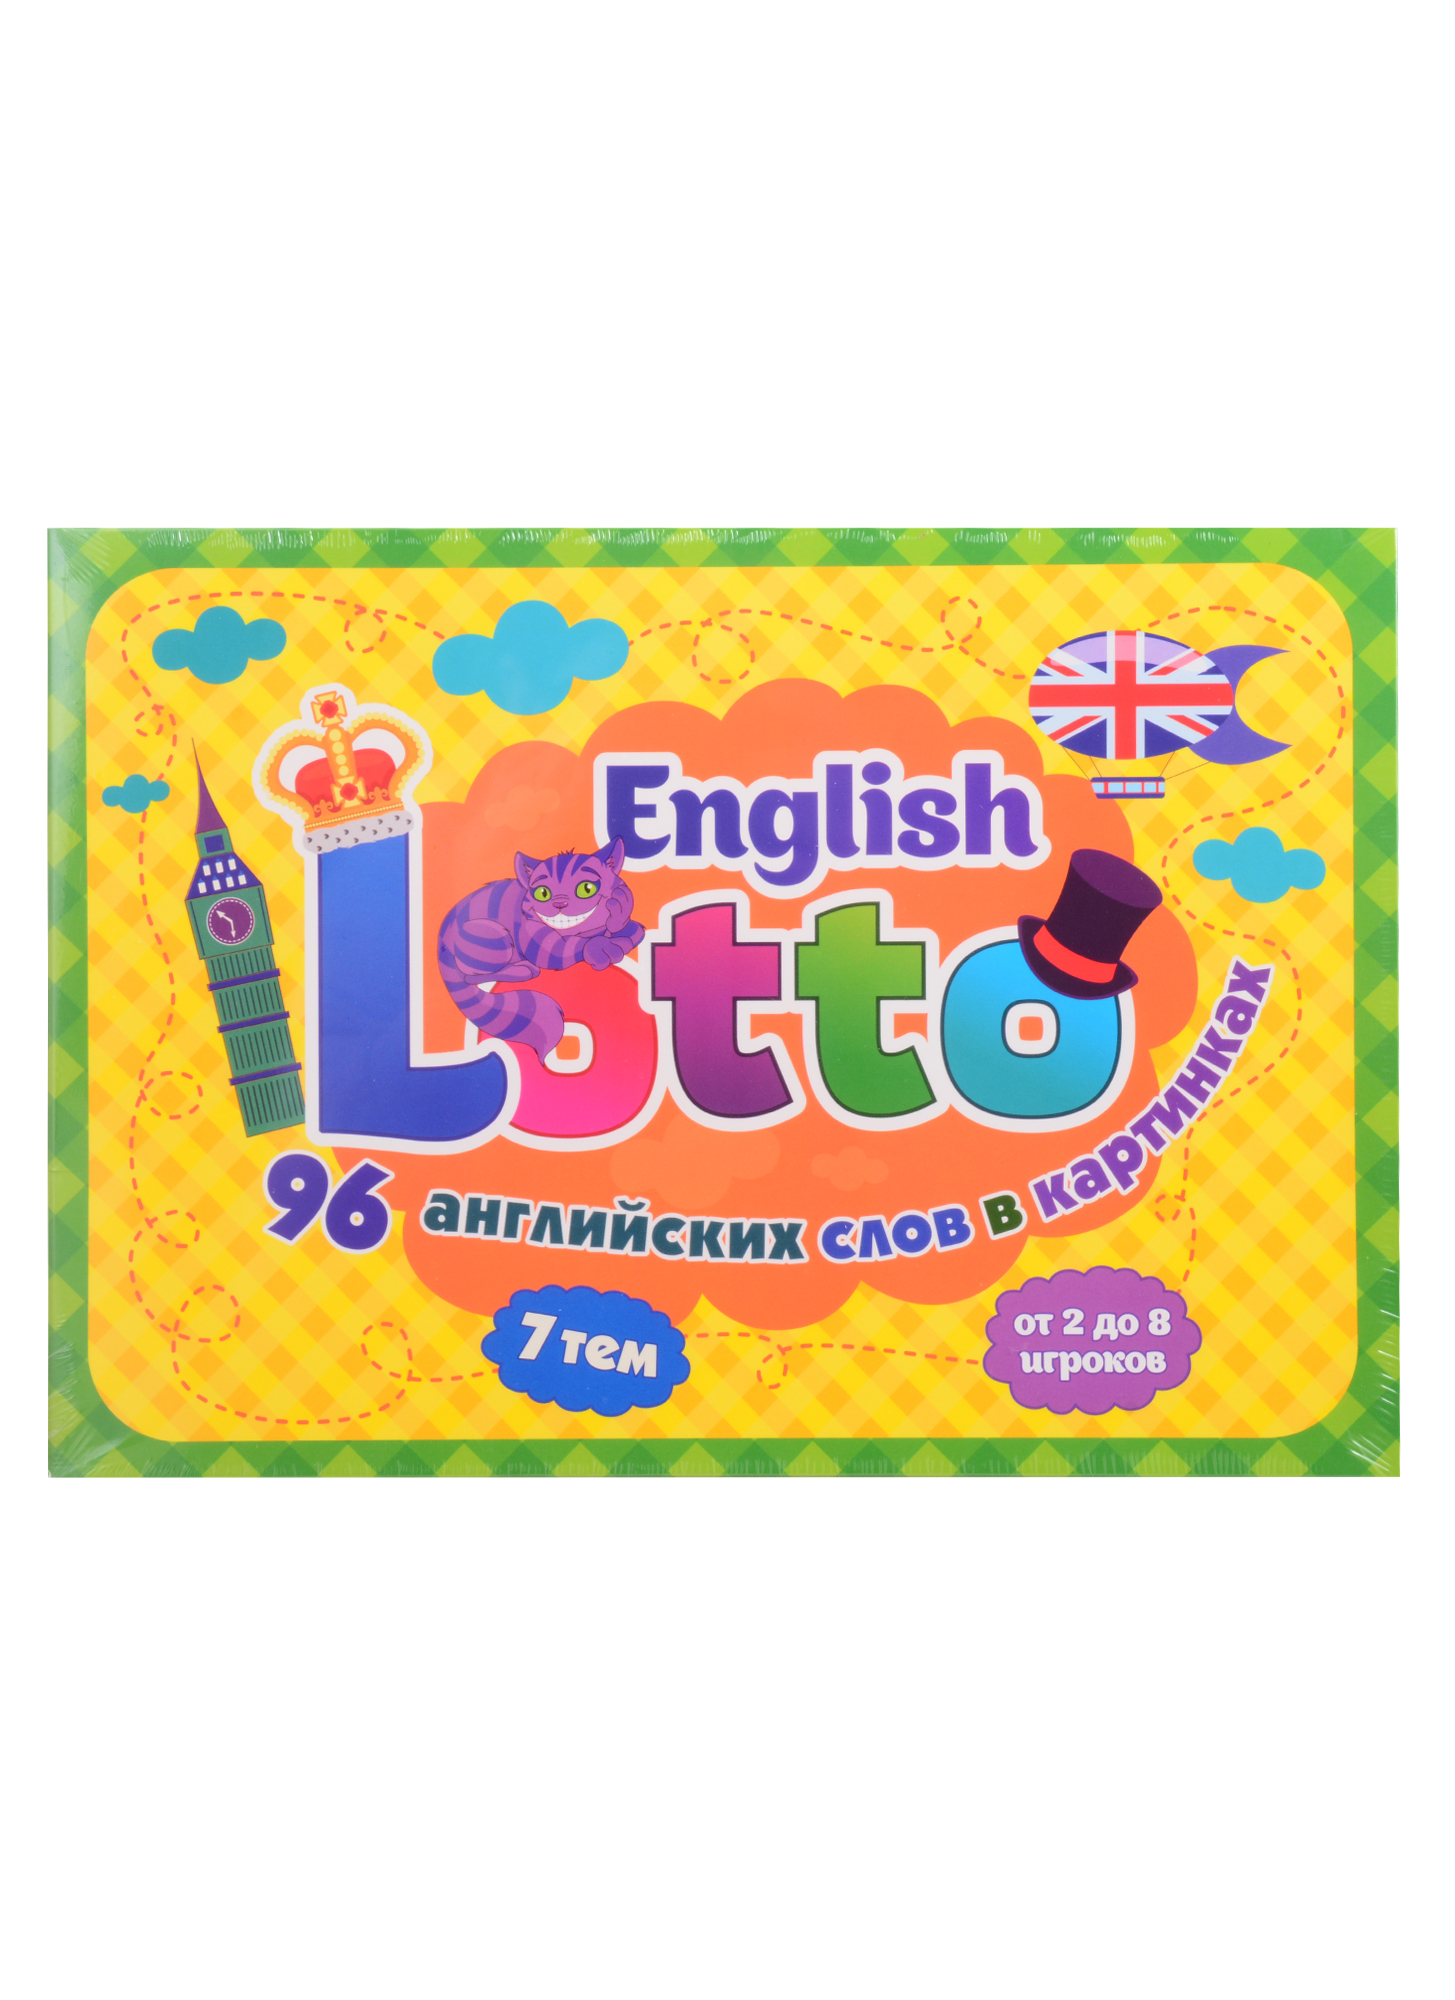 English Lotto: 96 английских слов в картинках. 7 тем. от 2 до 8 игроков